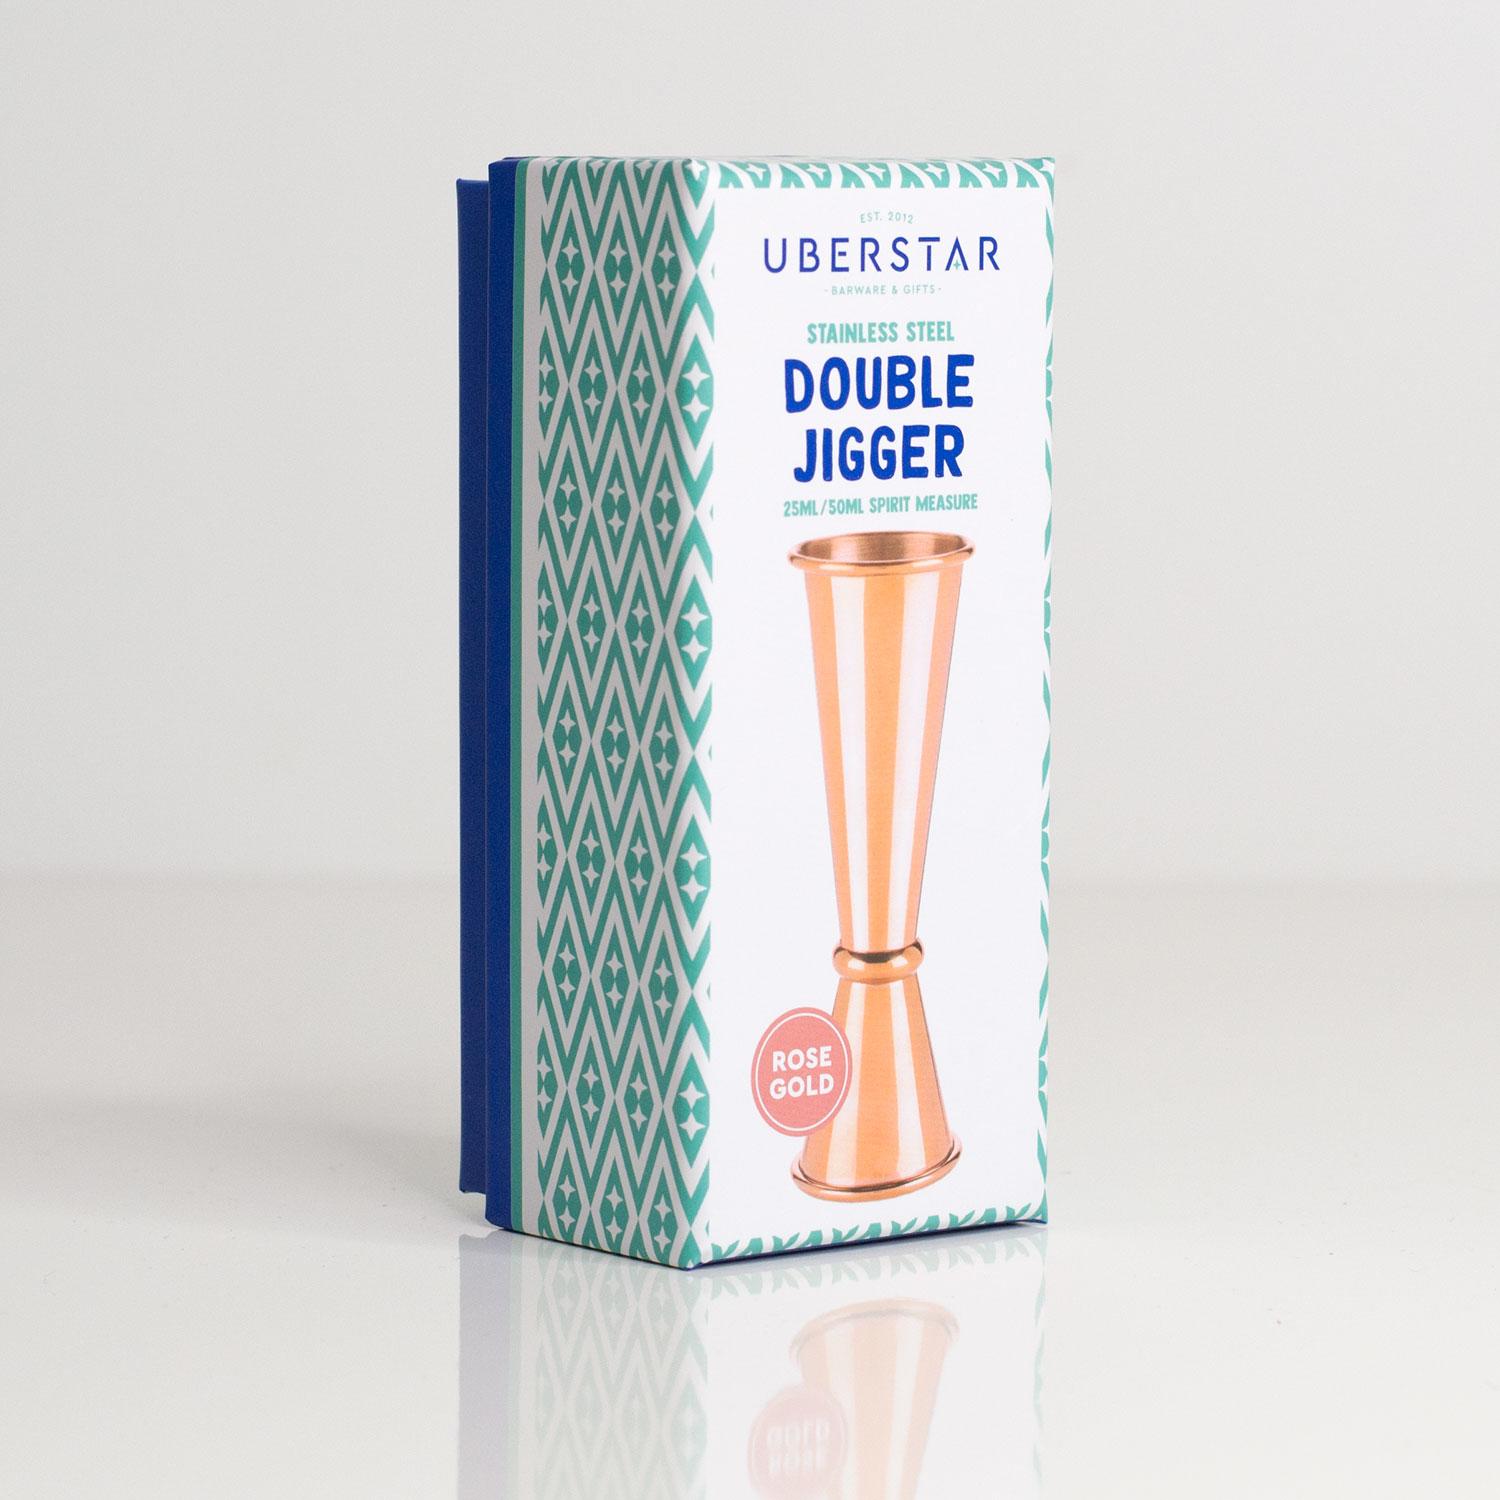 Uberstar Double Jigger - Rose Gold £8.99